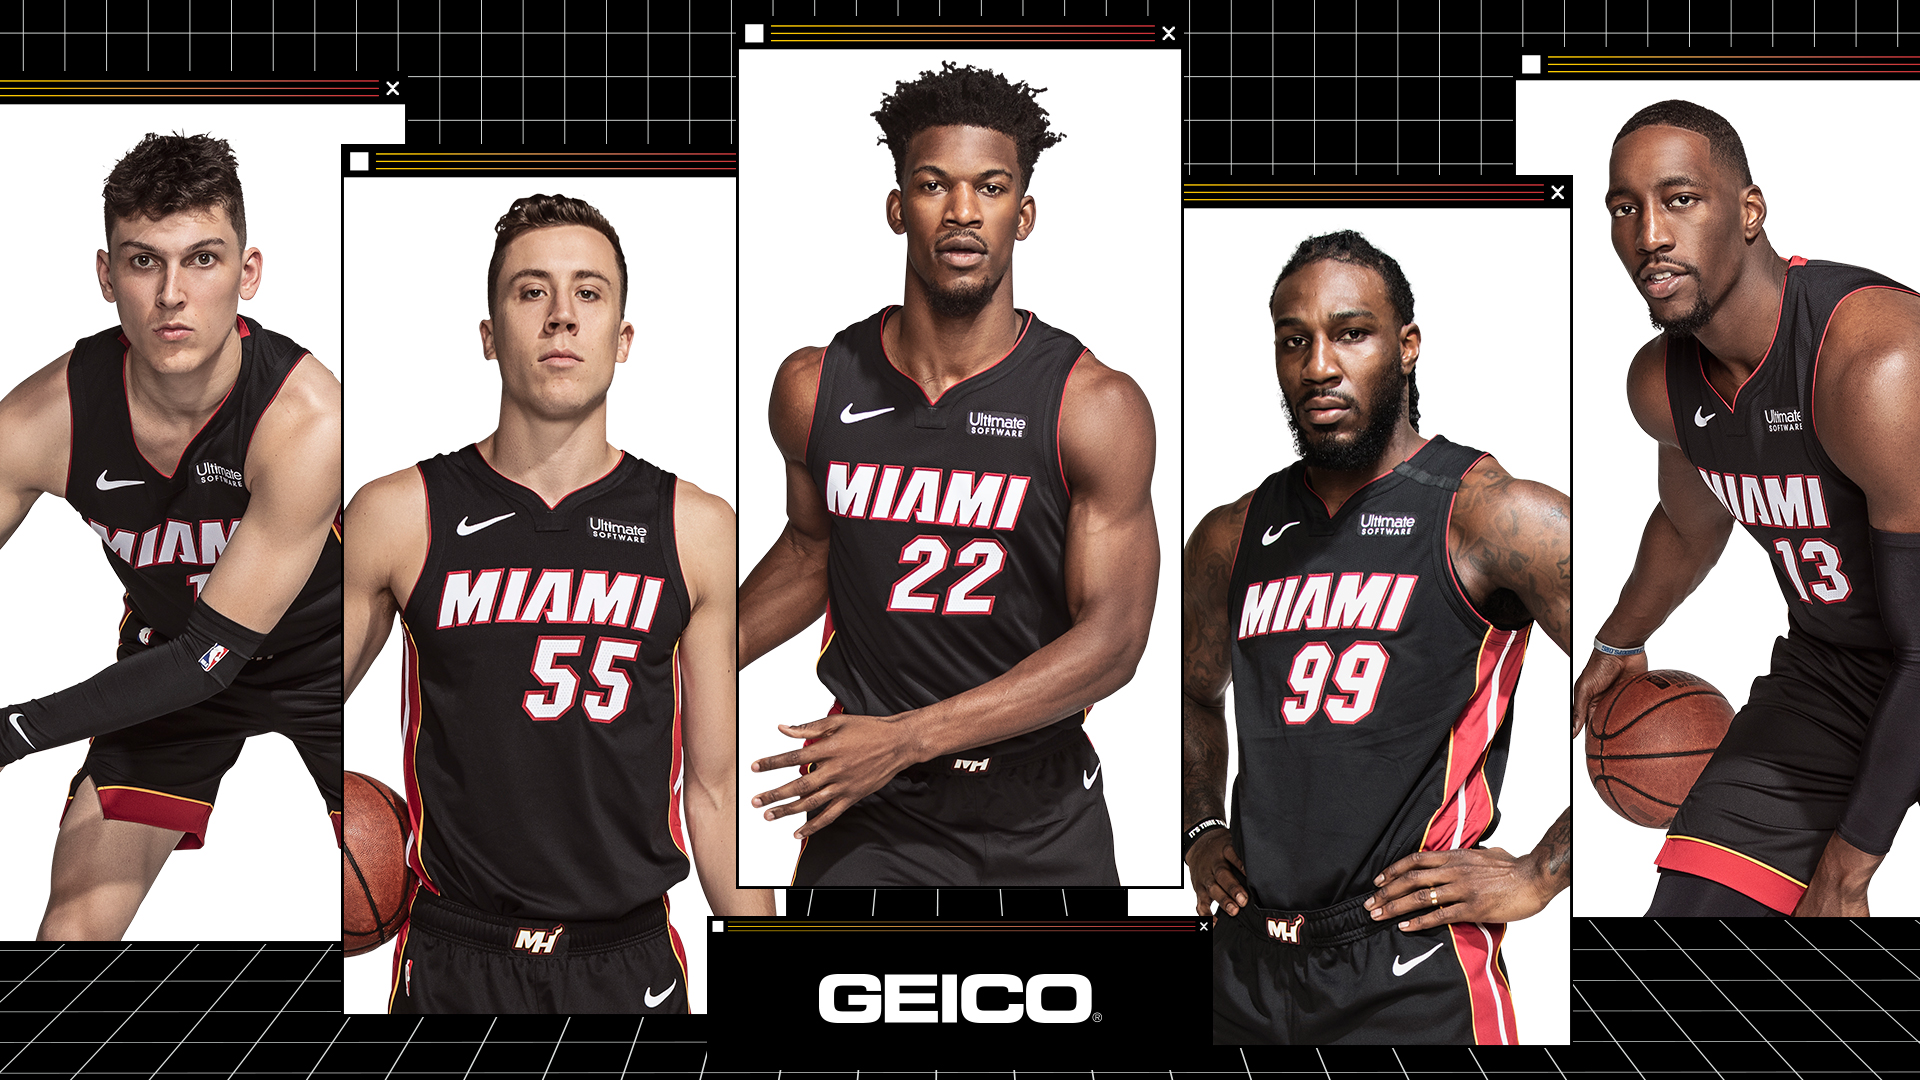 Miami HEAT Roster - Miami HEAT